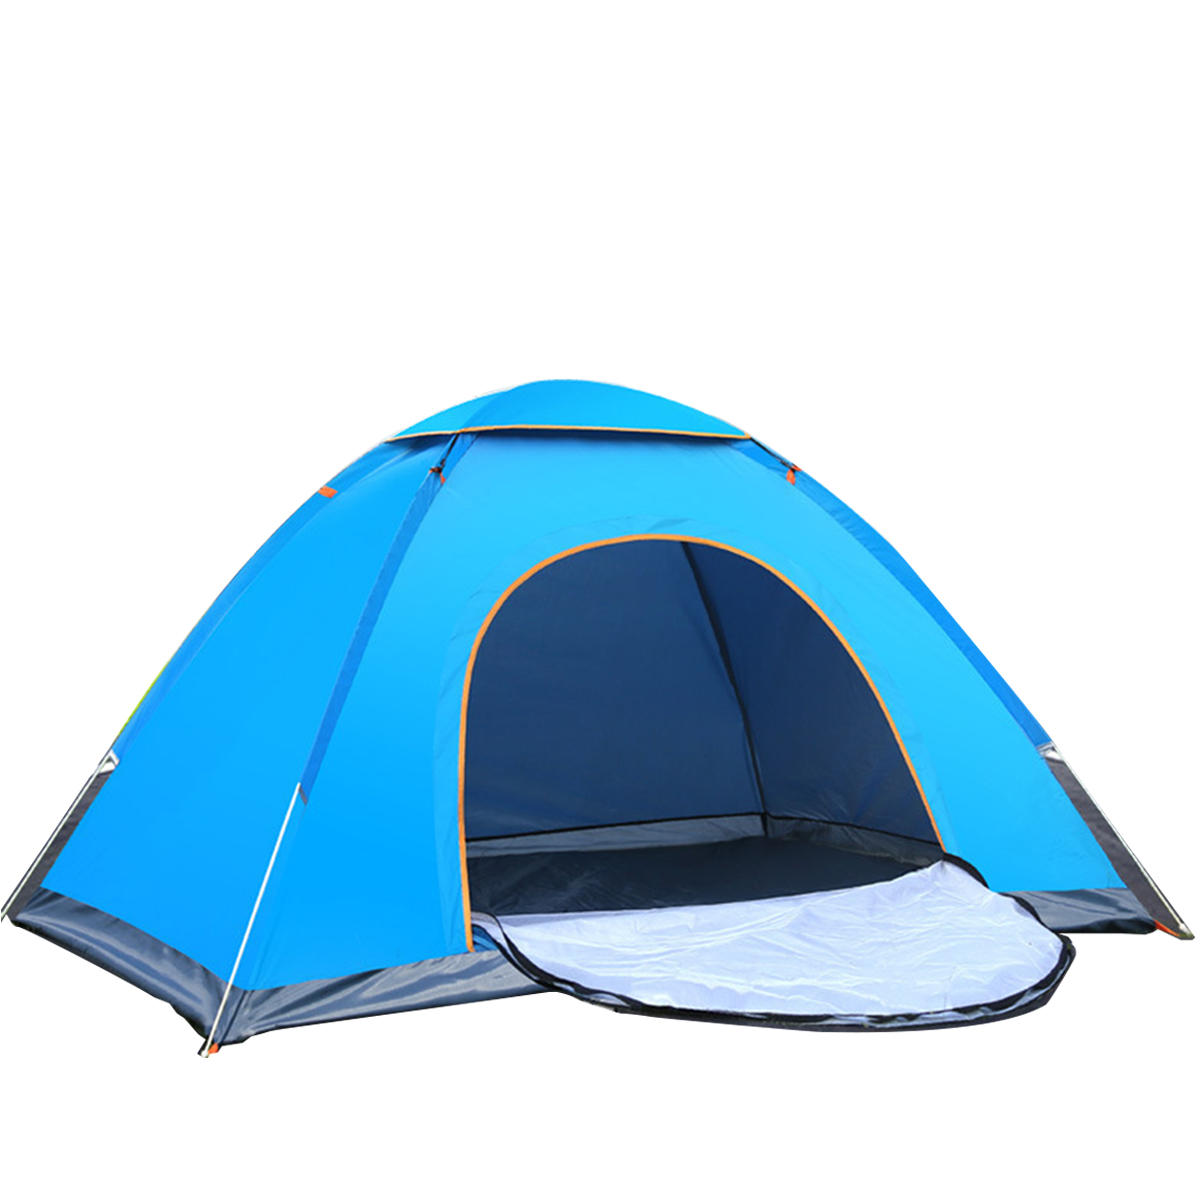 PRee® Tenda automatica pieghevole per 2-3 persone, resistente al sole e all'acqua, per campeggio, pesca, escursioni e viaggi all'aperto.